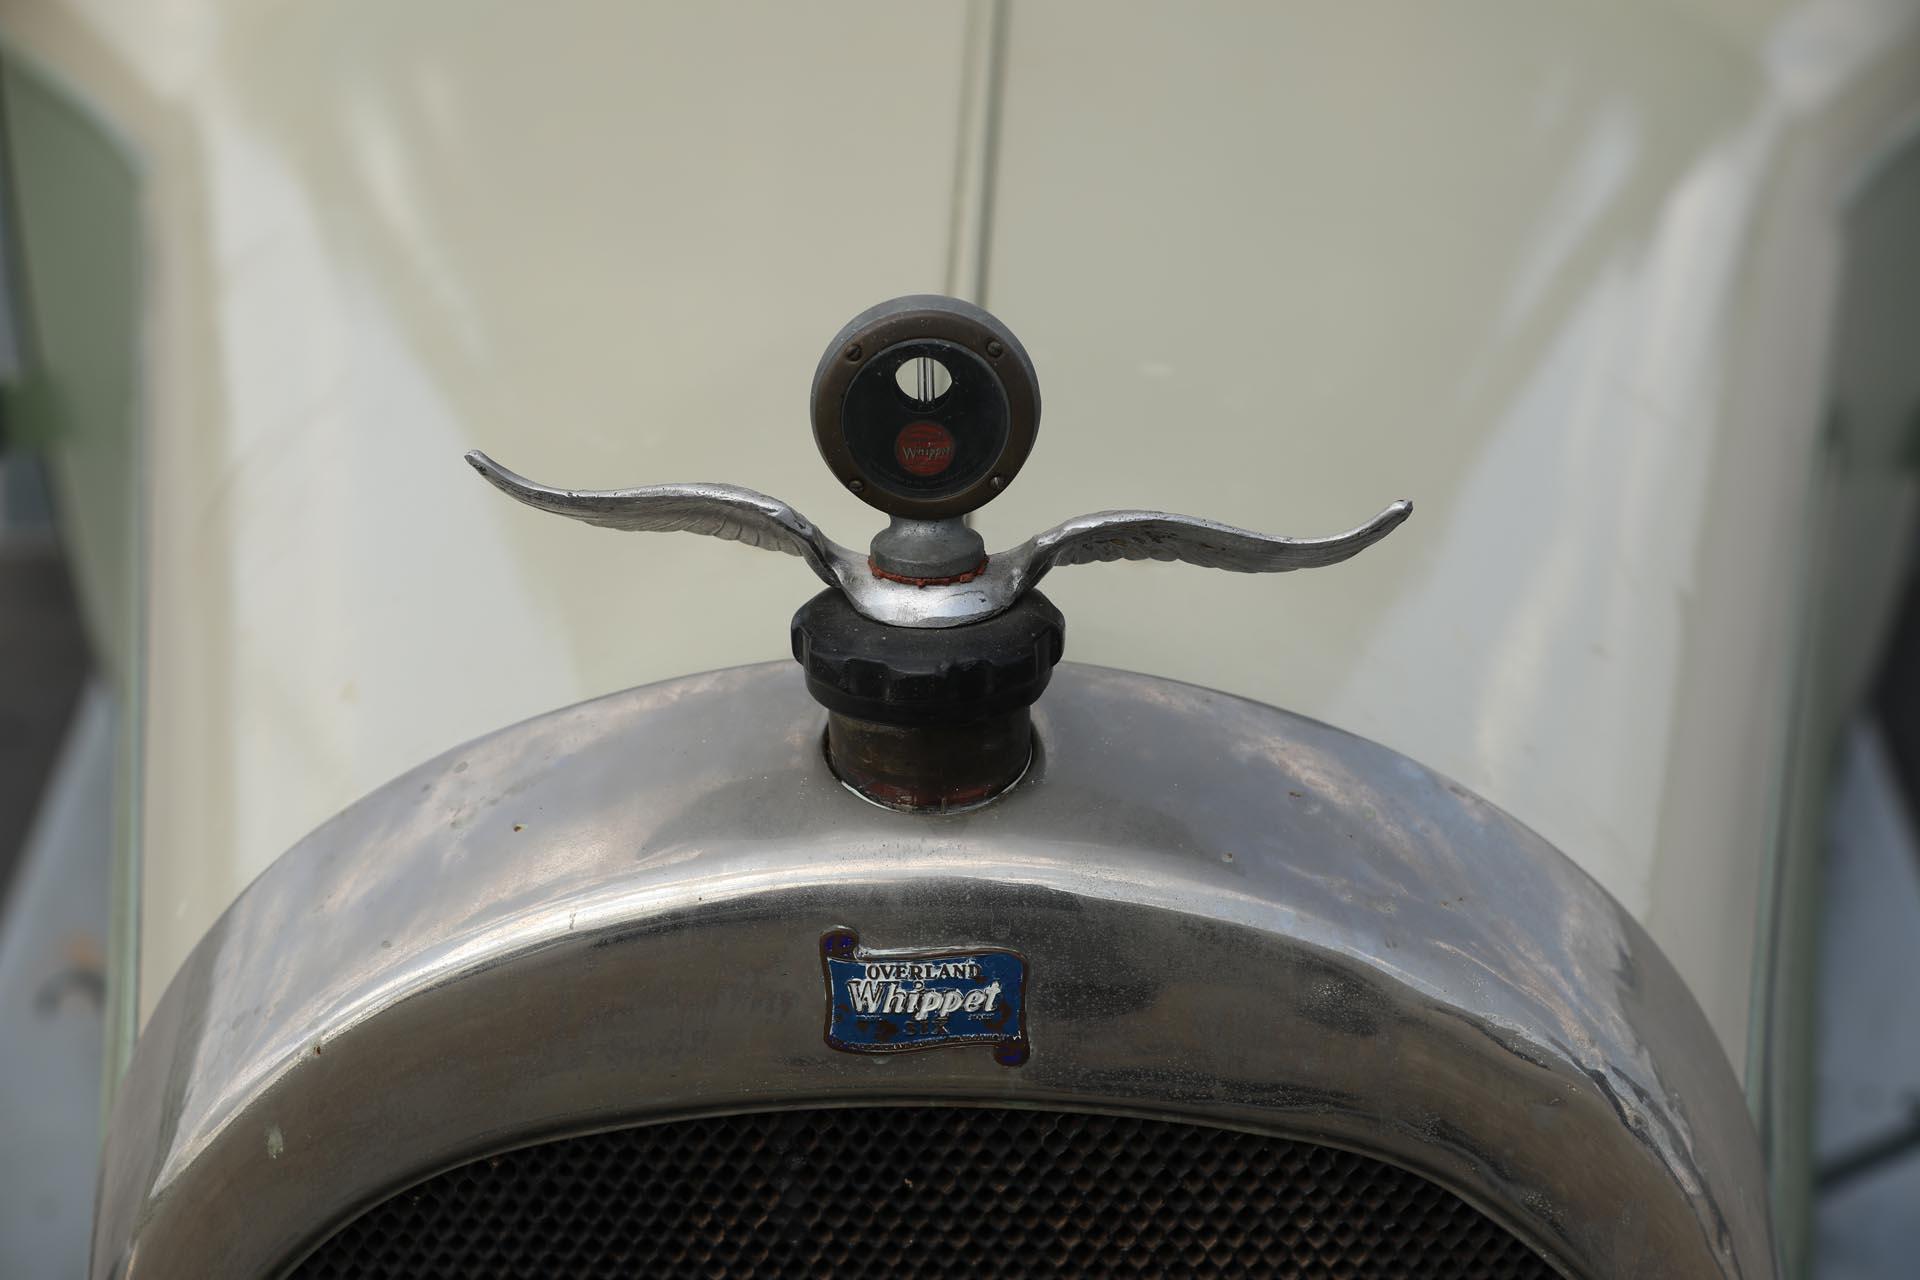 1928 Whippet Model 98 Five-Passenger Sedan